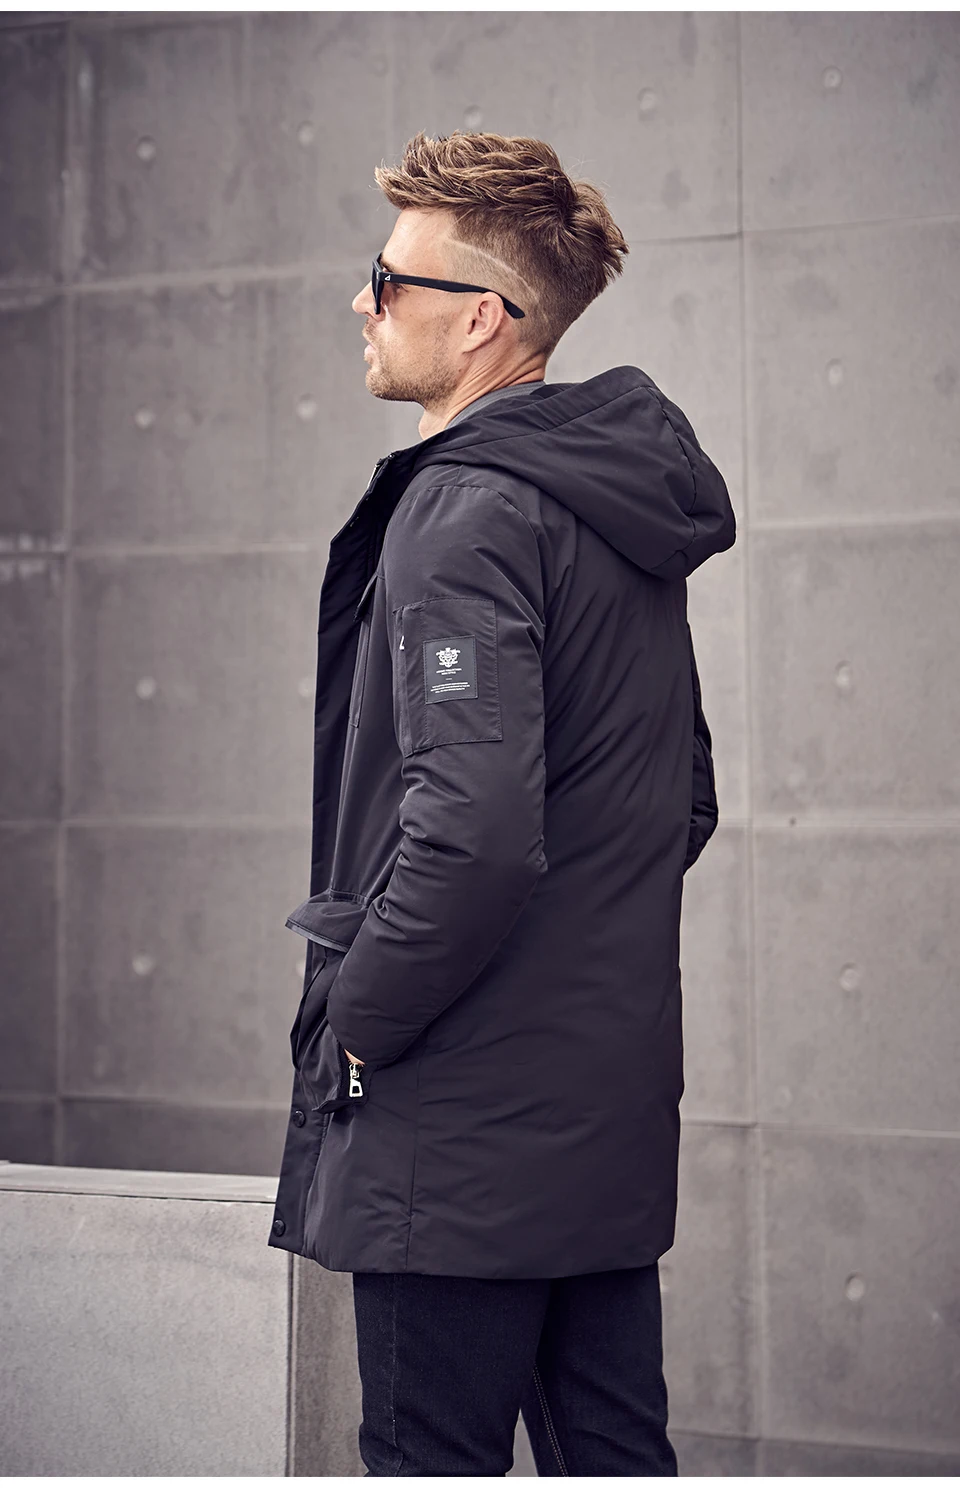 Enjeolon брендовая зимняя куртка с хлопковой подкладкой, мужская длинная куртка, мужские толстые толстовки, парка, пальто, Мужская стеганая зимняя куртка, пальто MF0626